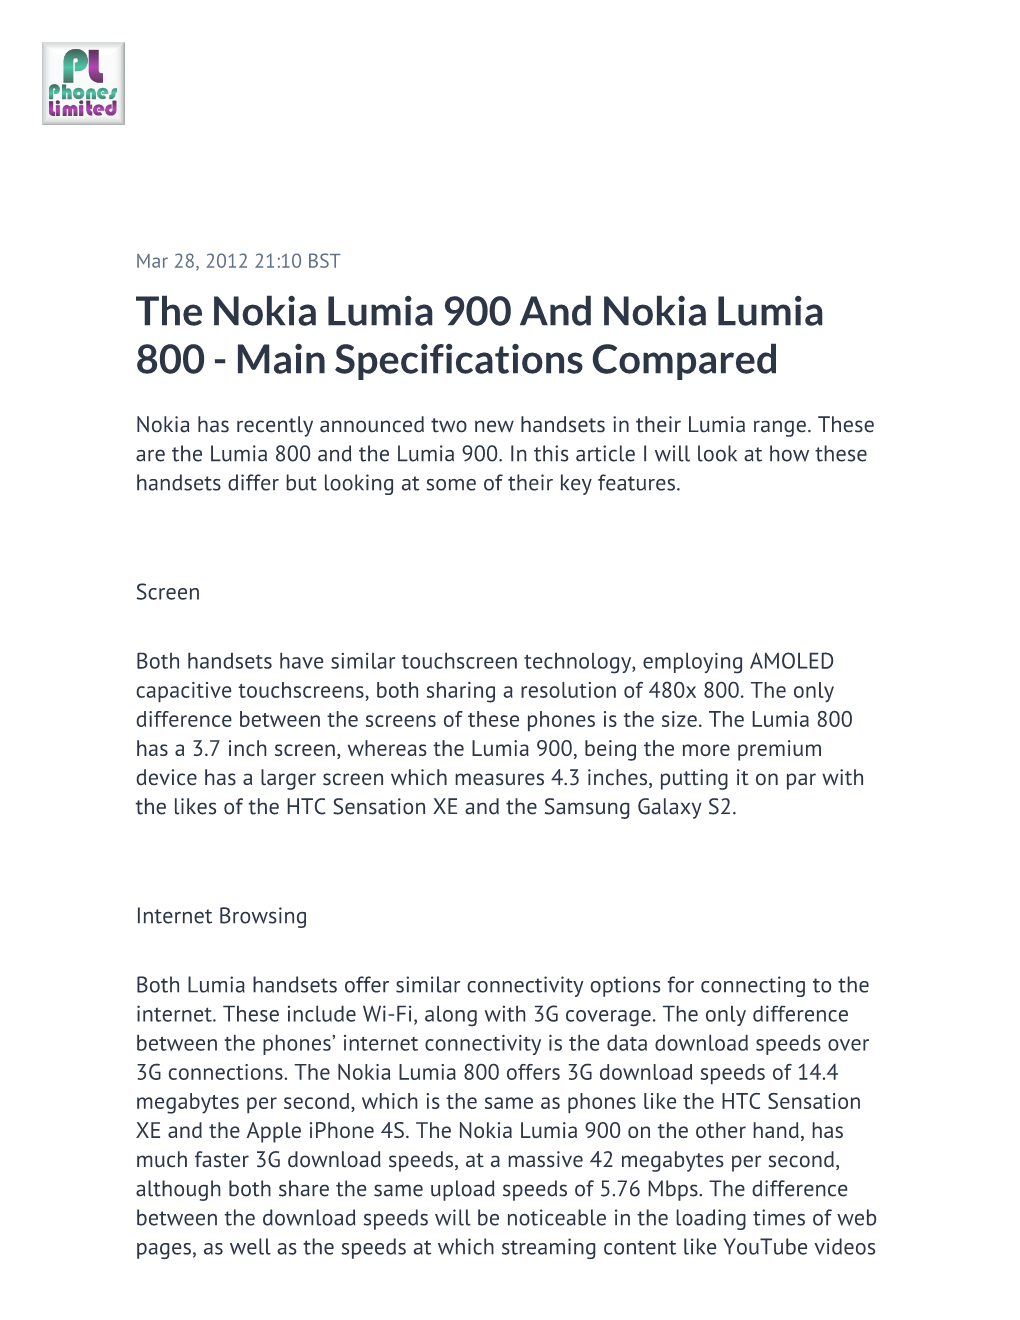 The Nokia Lumia 900 and Nokia Lumia 800 - Main Specifications Compared